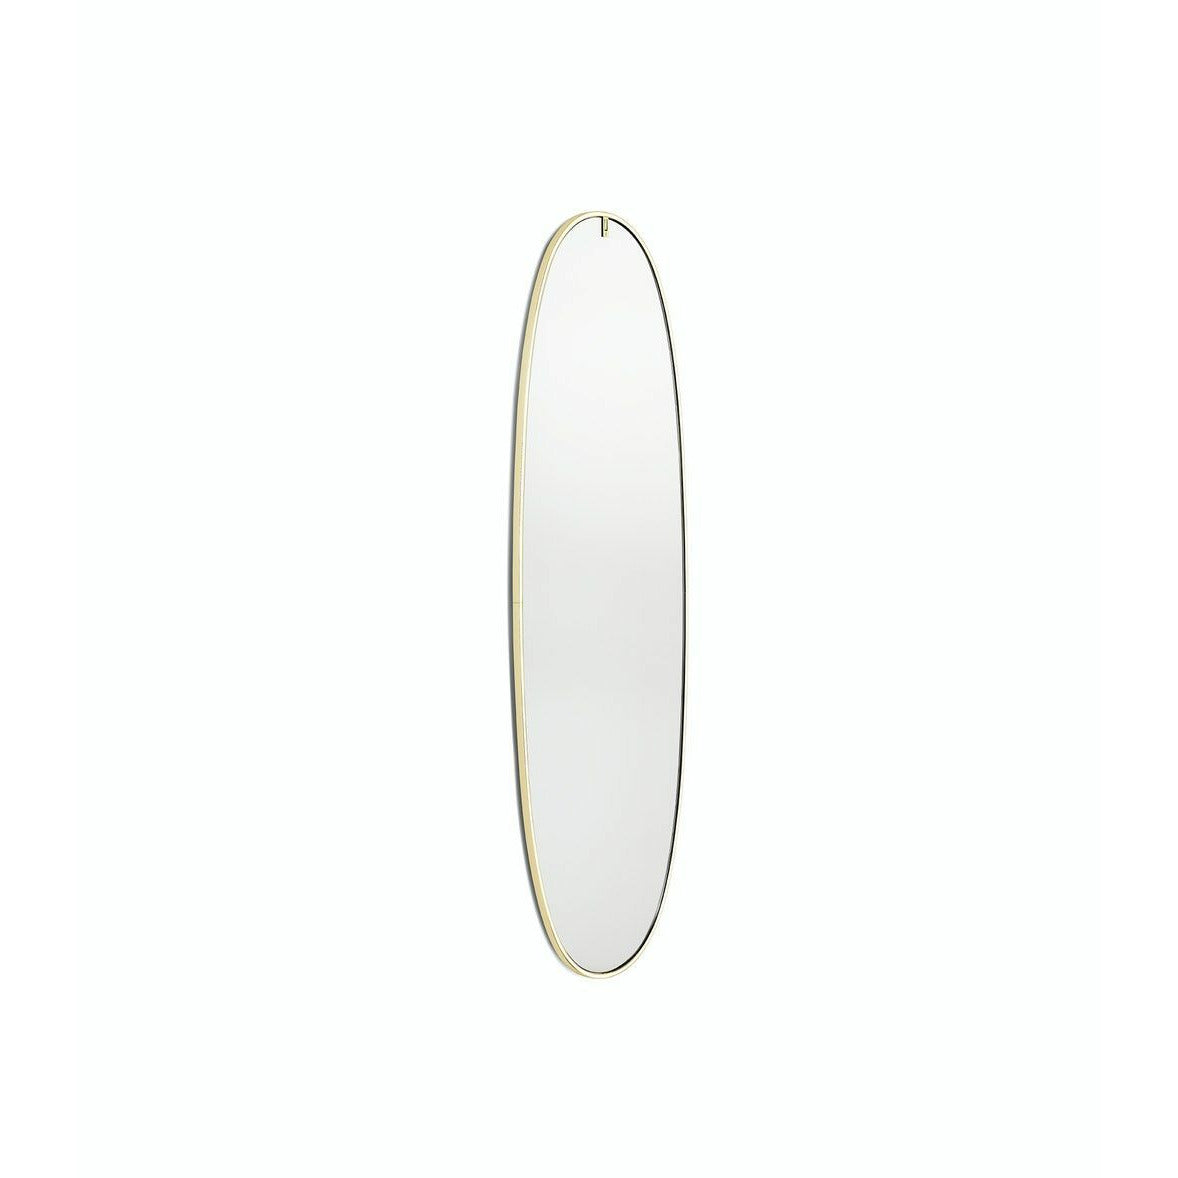 Flos la plus mirror Belle con illuminazione integrata, oro spazzolato